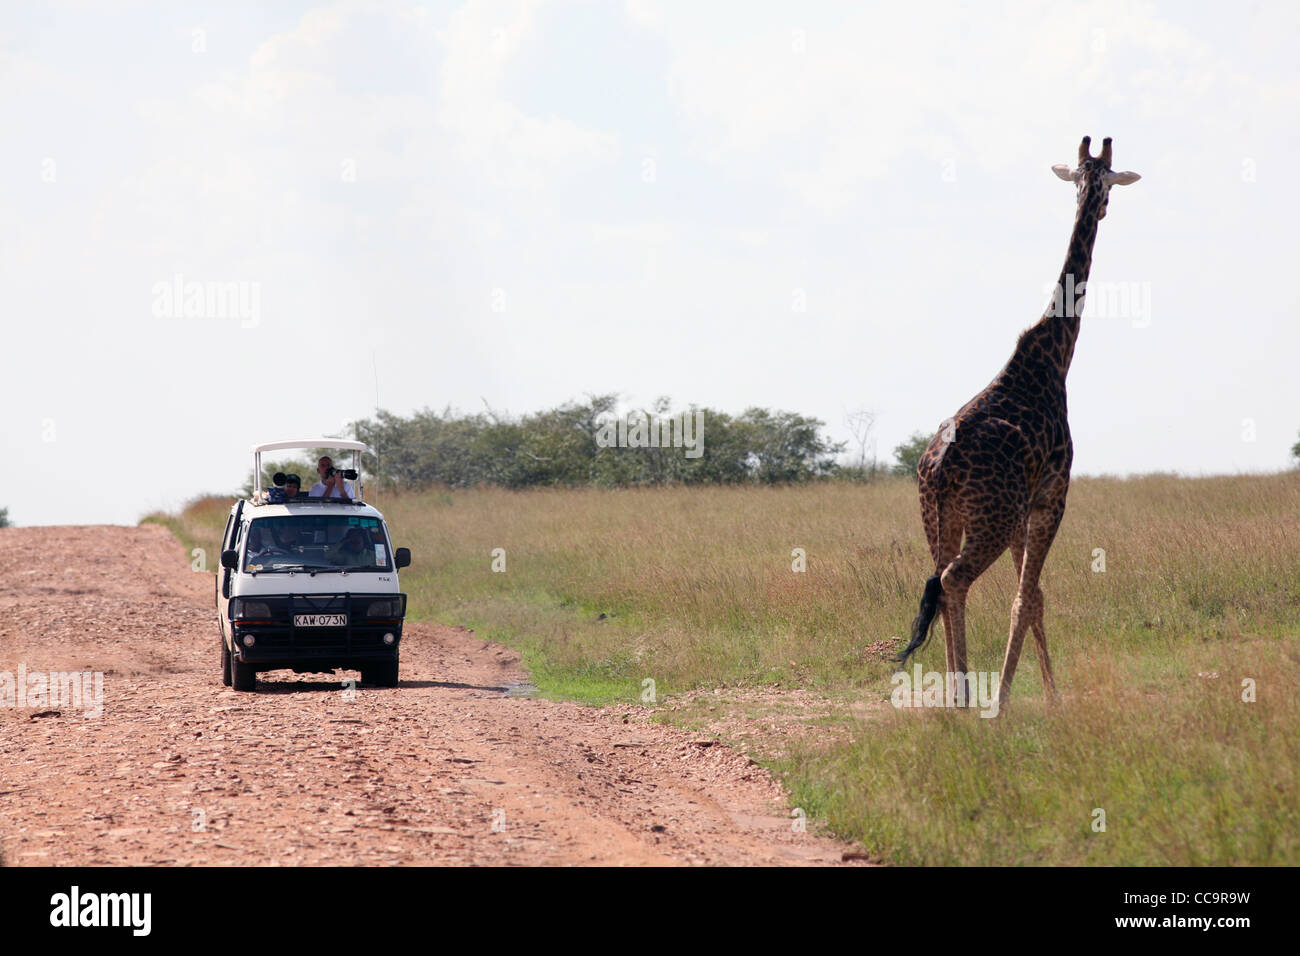 Les touristes photographier une girafe, Masai Mara National Reserve, Kenya, Afrique de l'Est. Banque D'Images